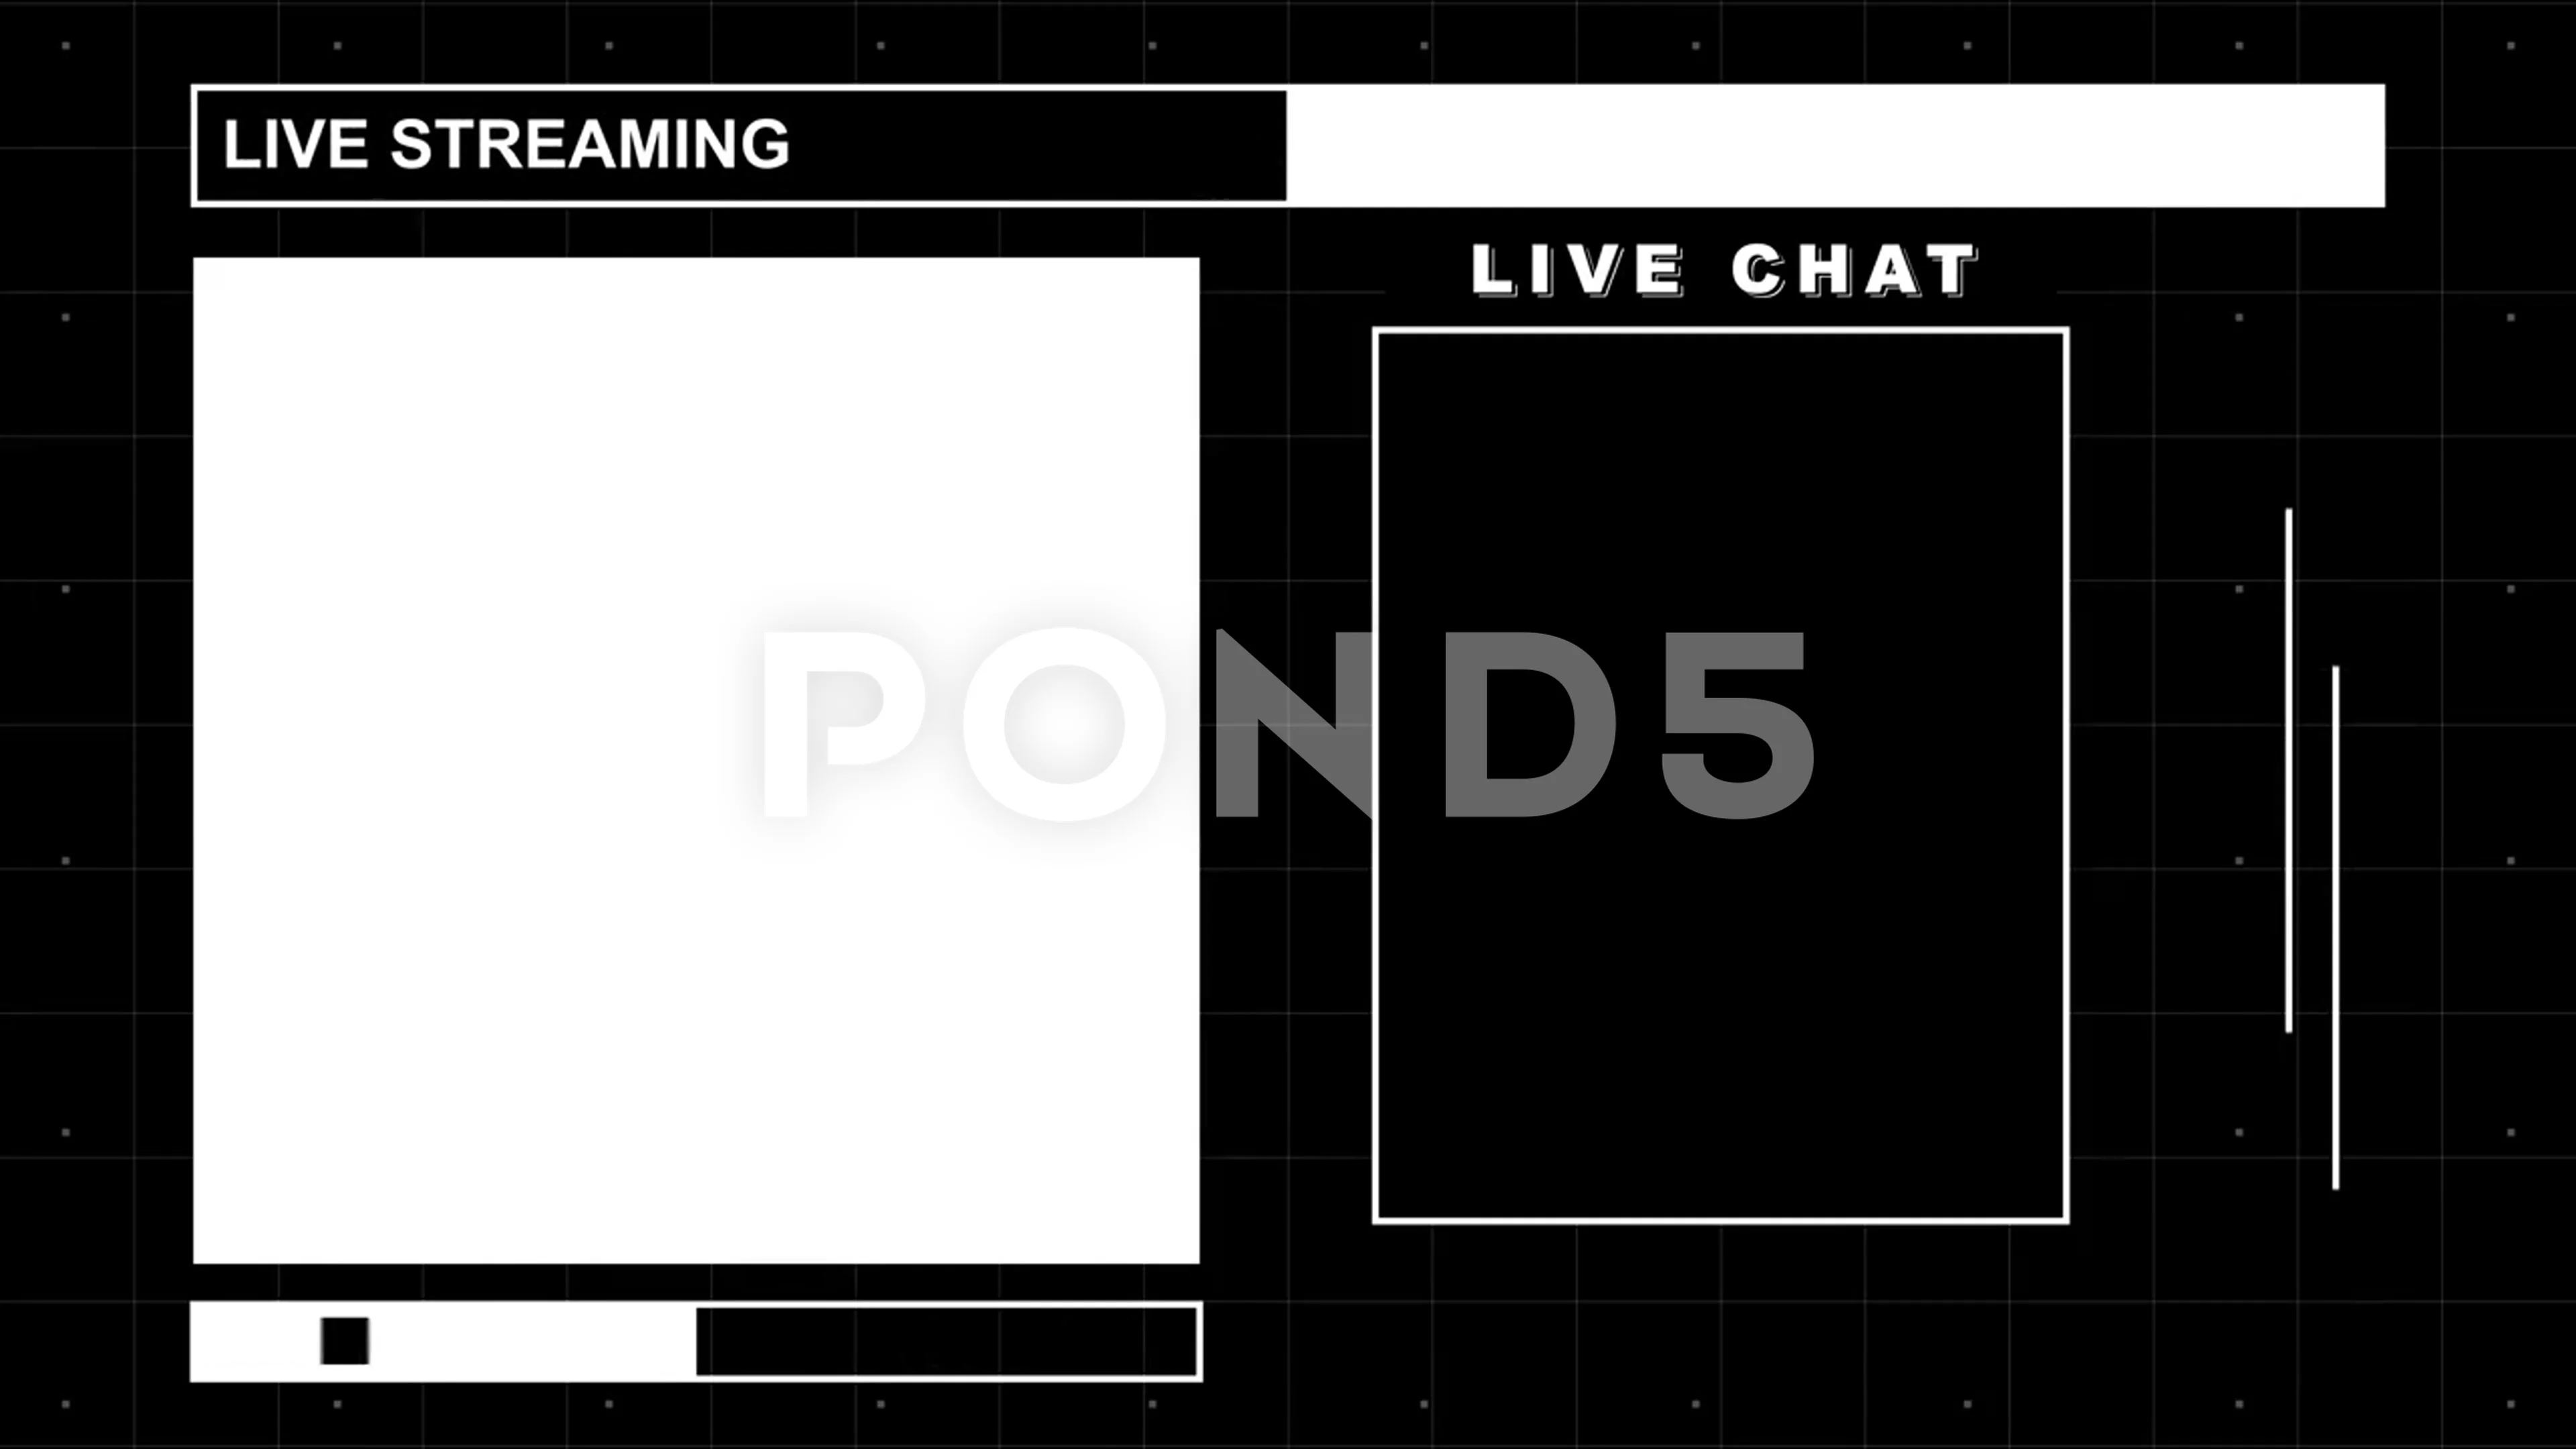 Live chat pond5 Pond5 Announces